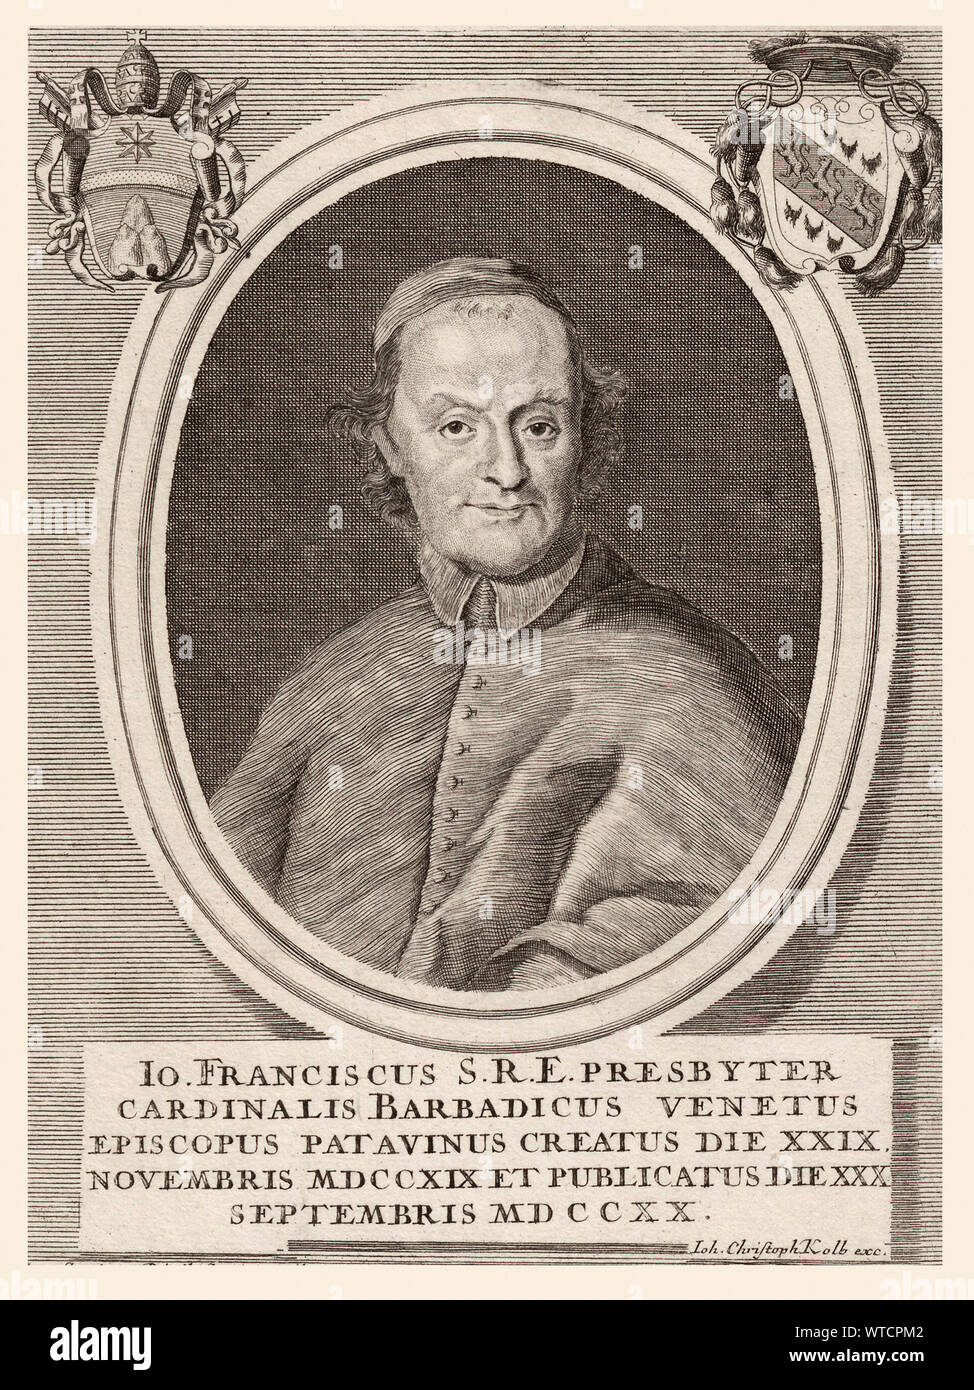 Giovanni Francesco Barbarigo (1658 a Venezia - 1730) è stato un cardinale italiano e nipote di san Gregorio Barbarigo (1625-97). Foto Stock